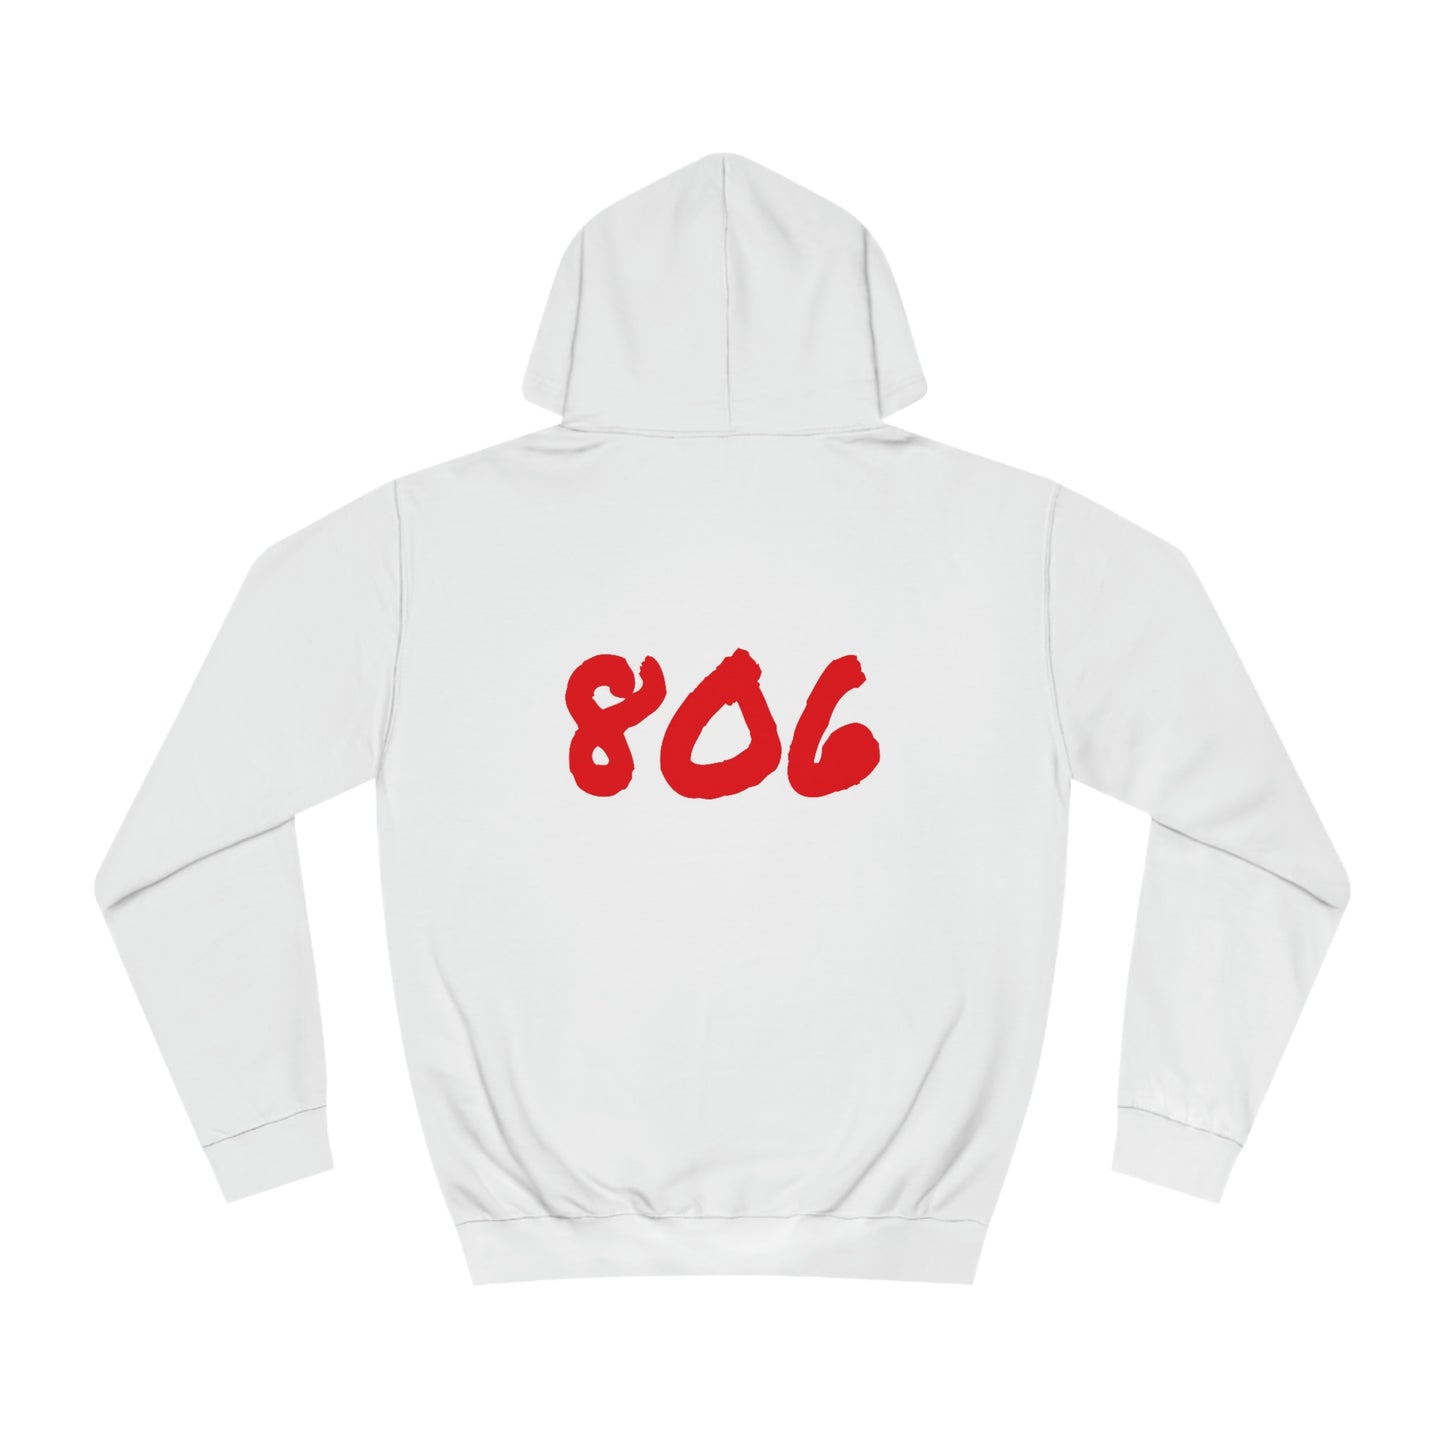 Slam 806 girl hoodie